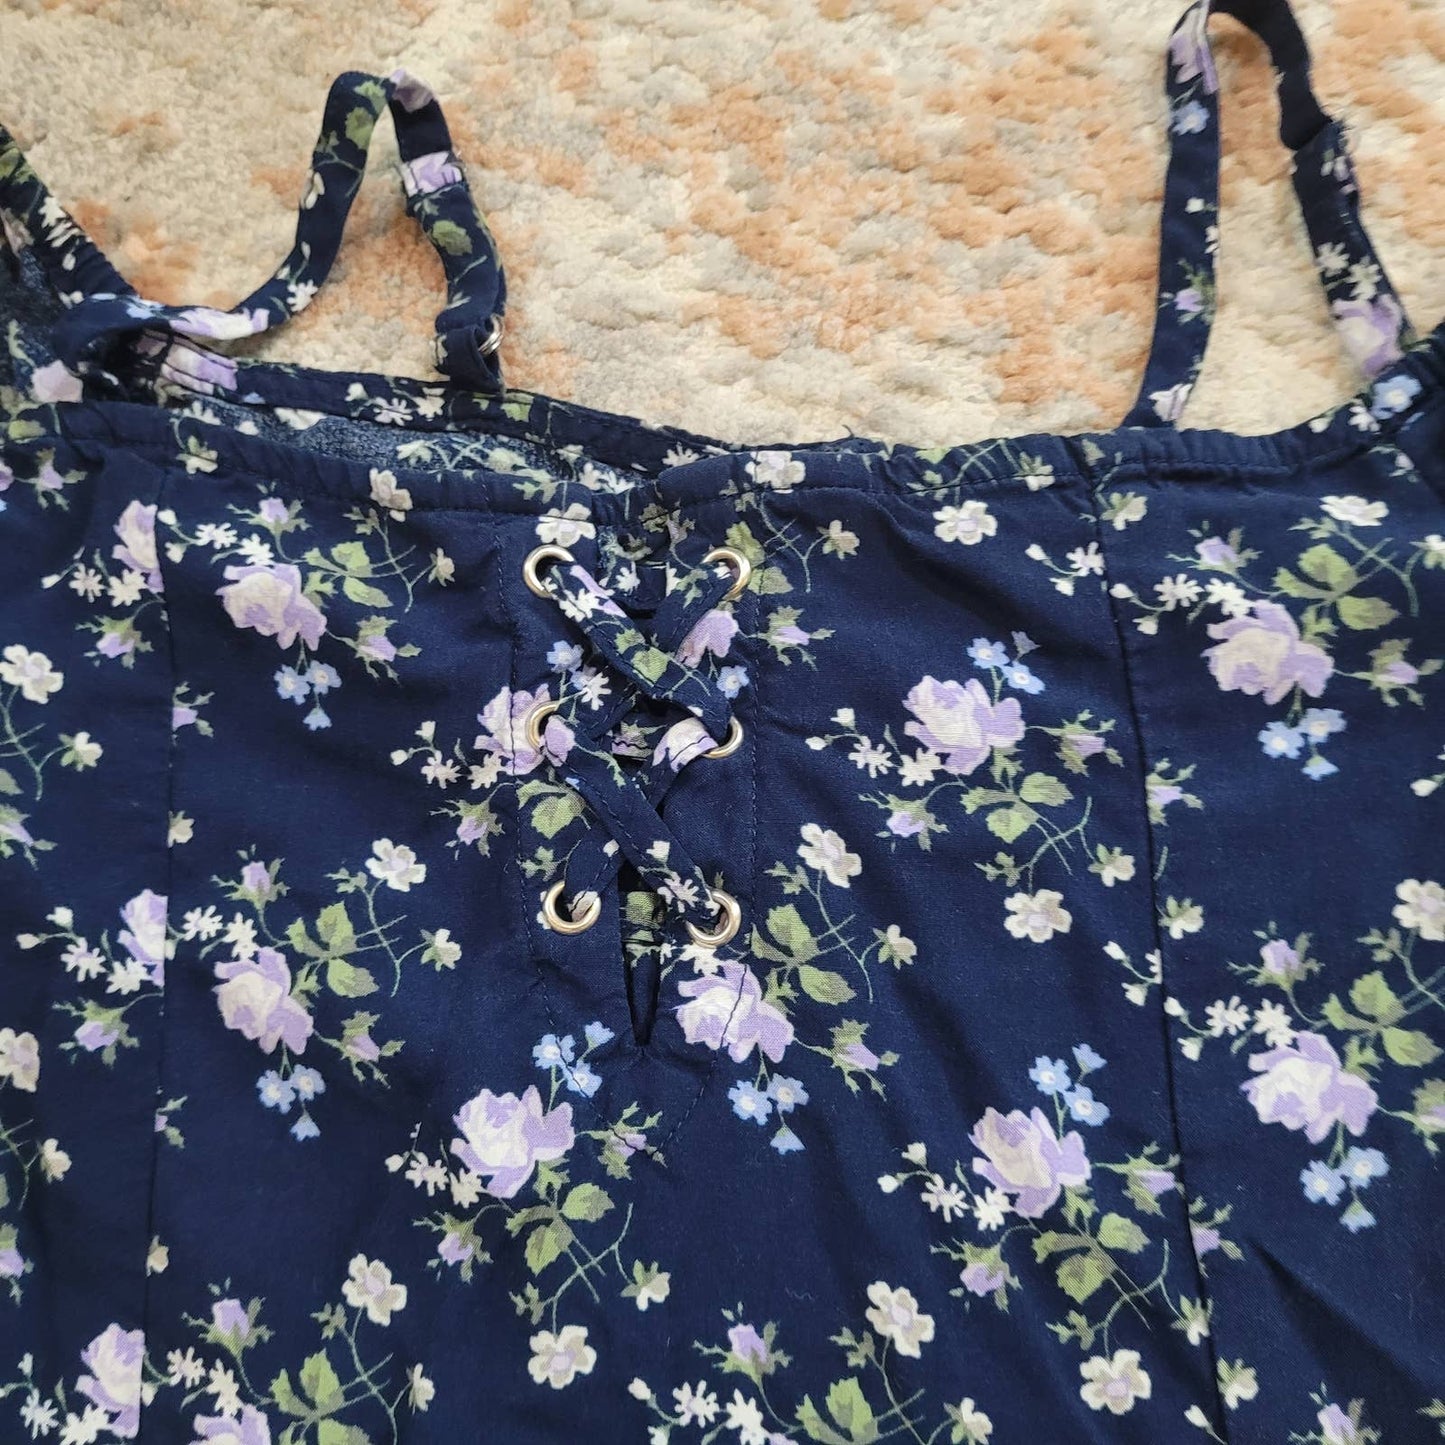 Place Blue Floral Dress - Size 14